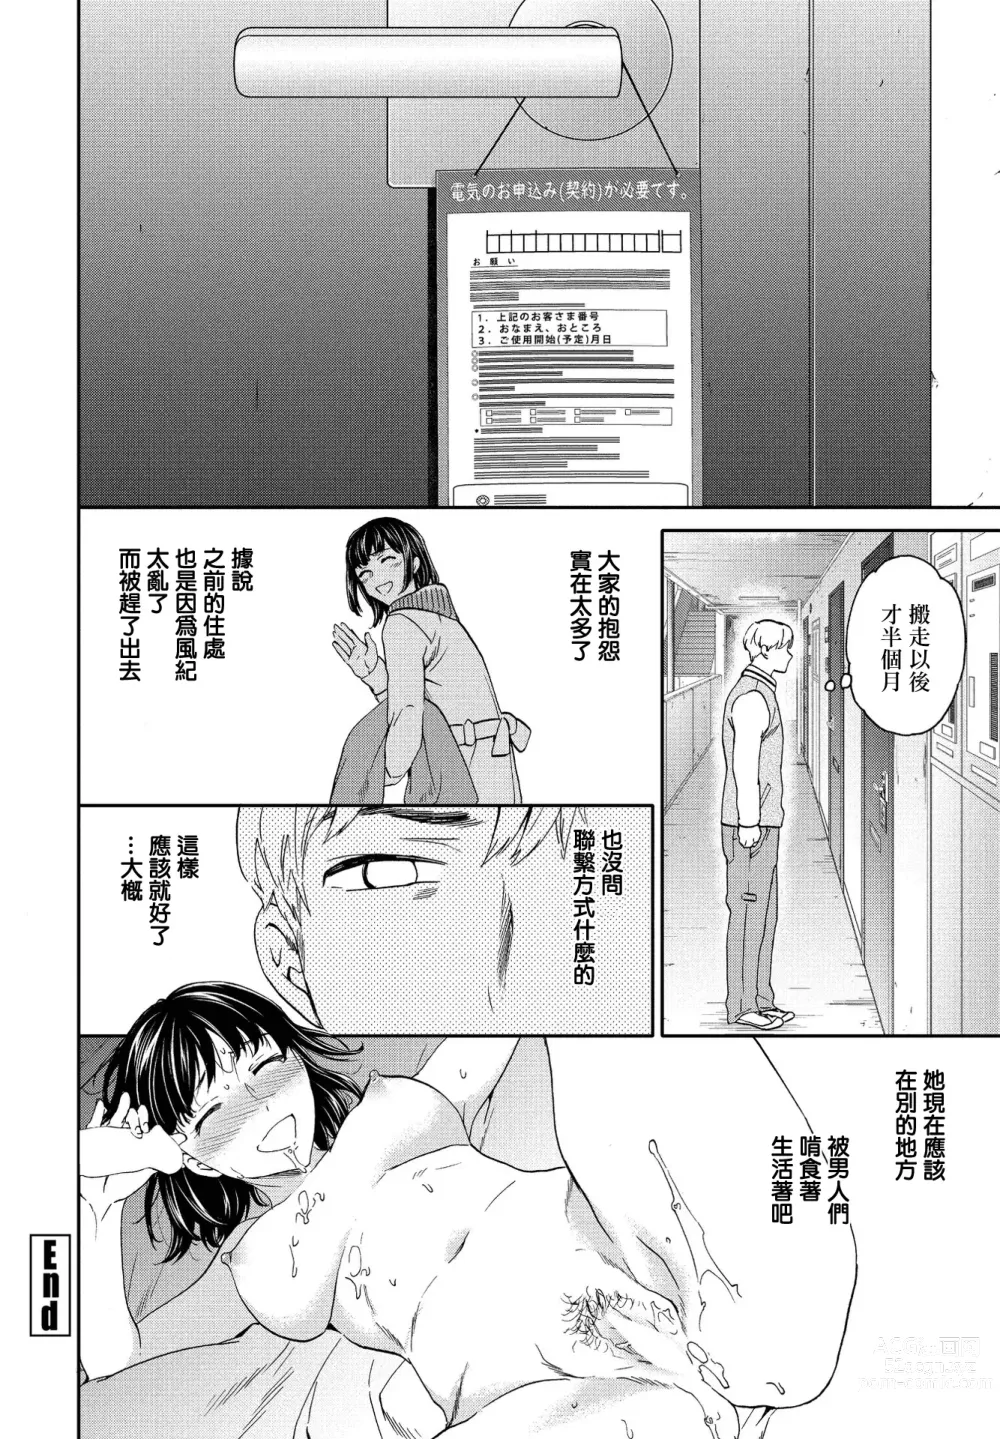 Page 26 of manga Utsubokazura Kouhen